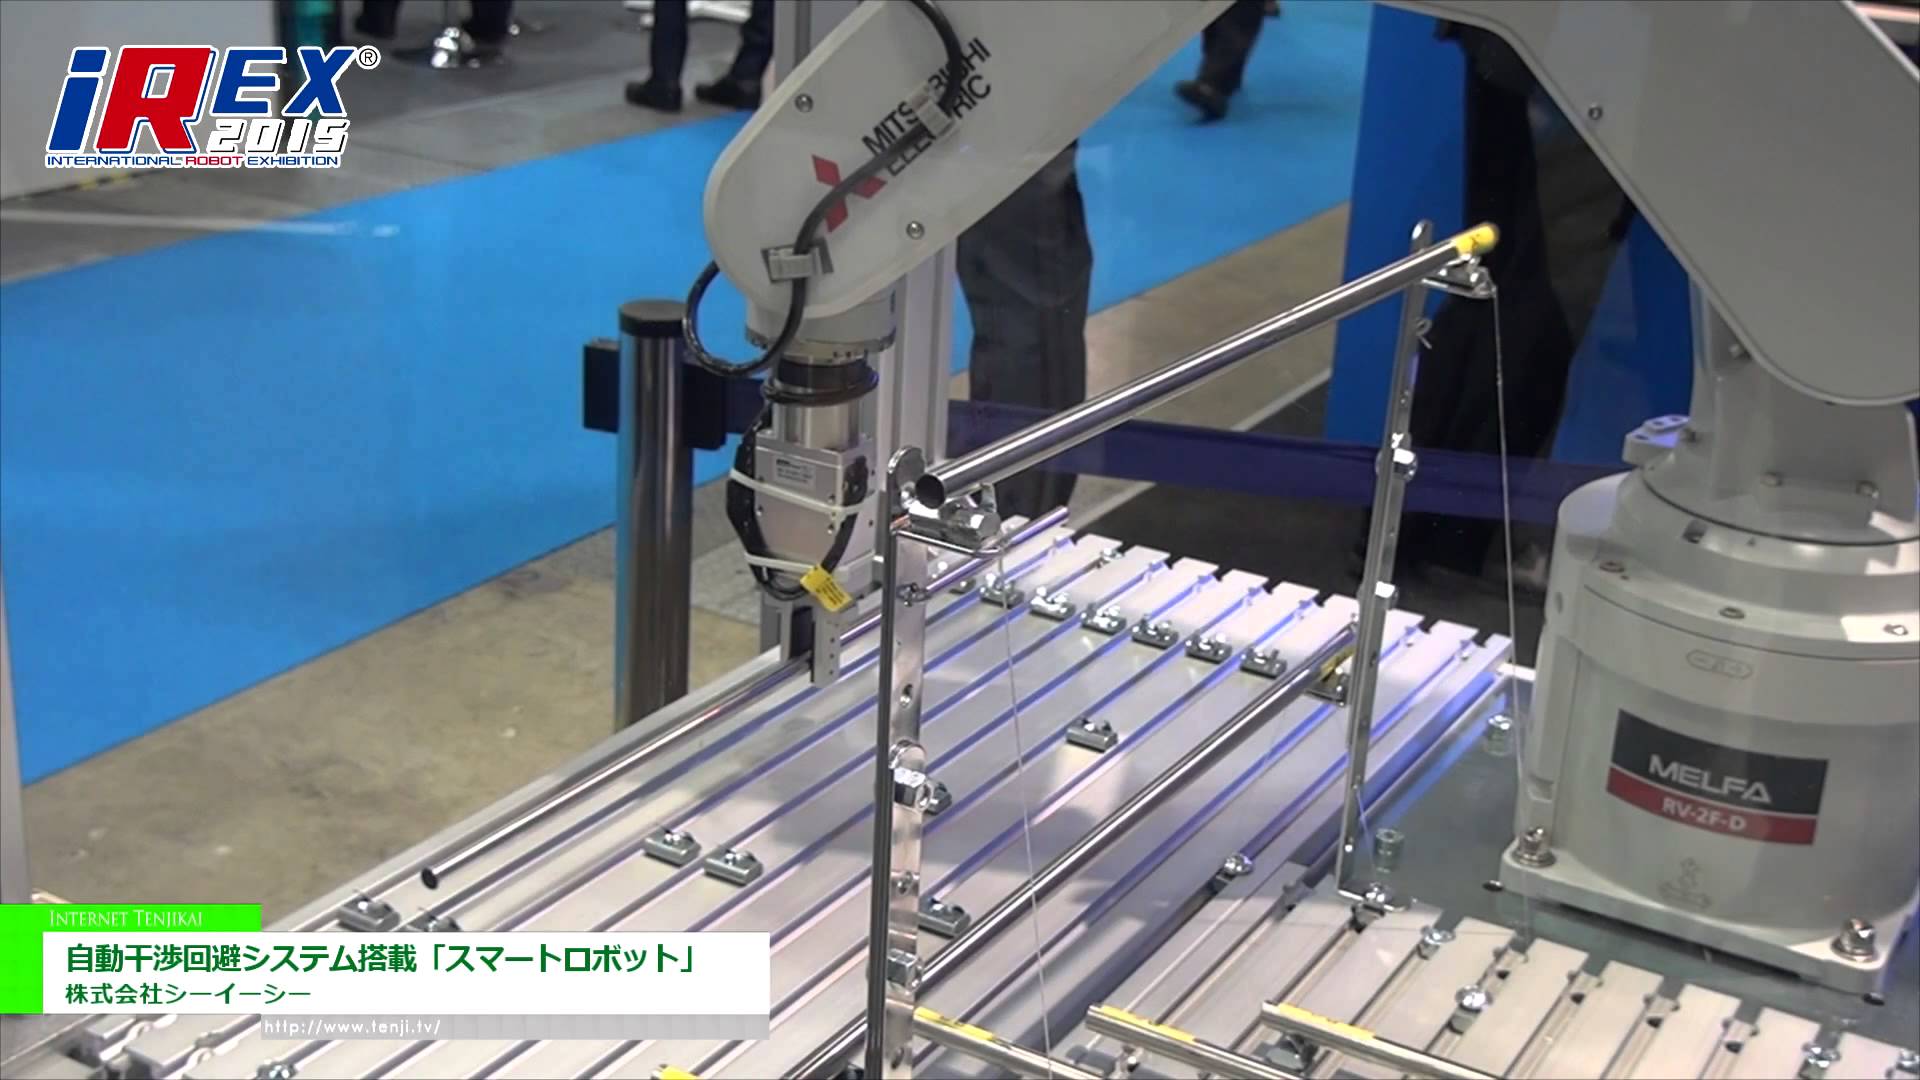 [国際ロボット展 2015] 自動干渉回避システム搭載ロボット「スマートロボット」 - 株式会社シーイーシー